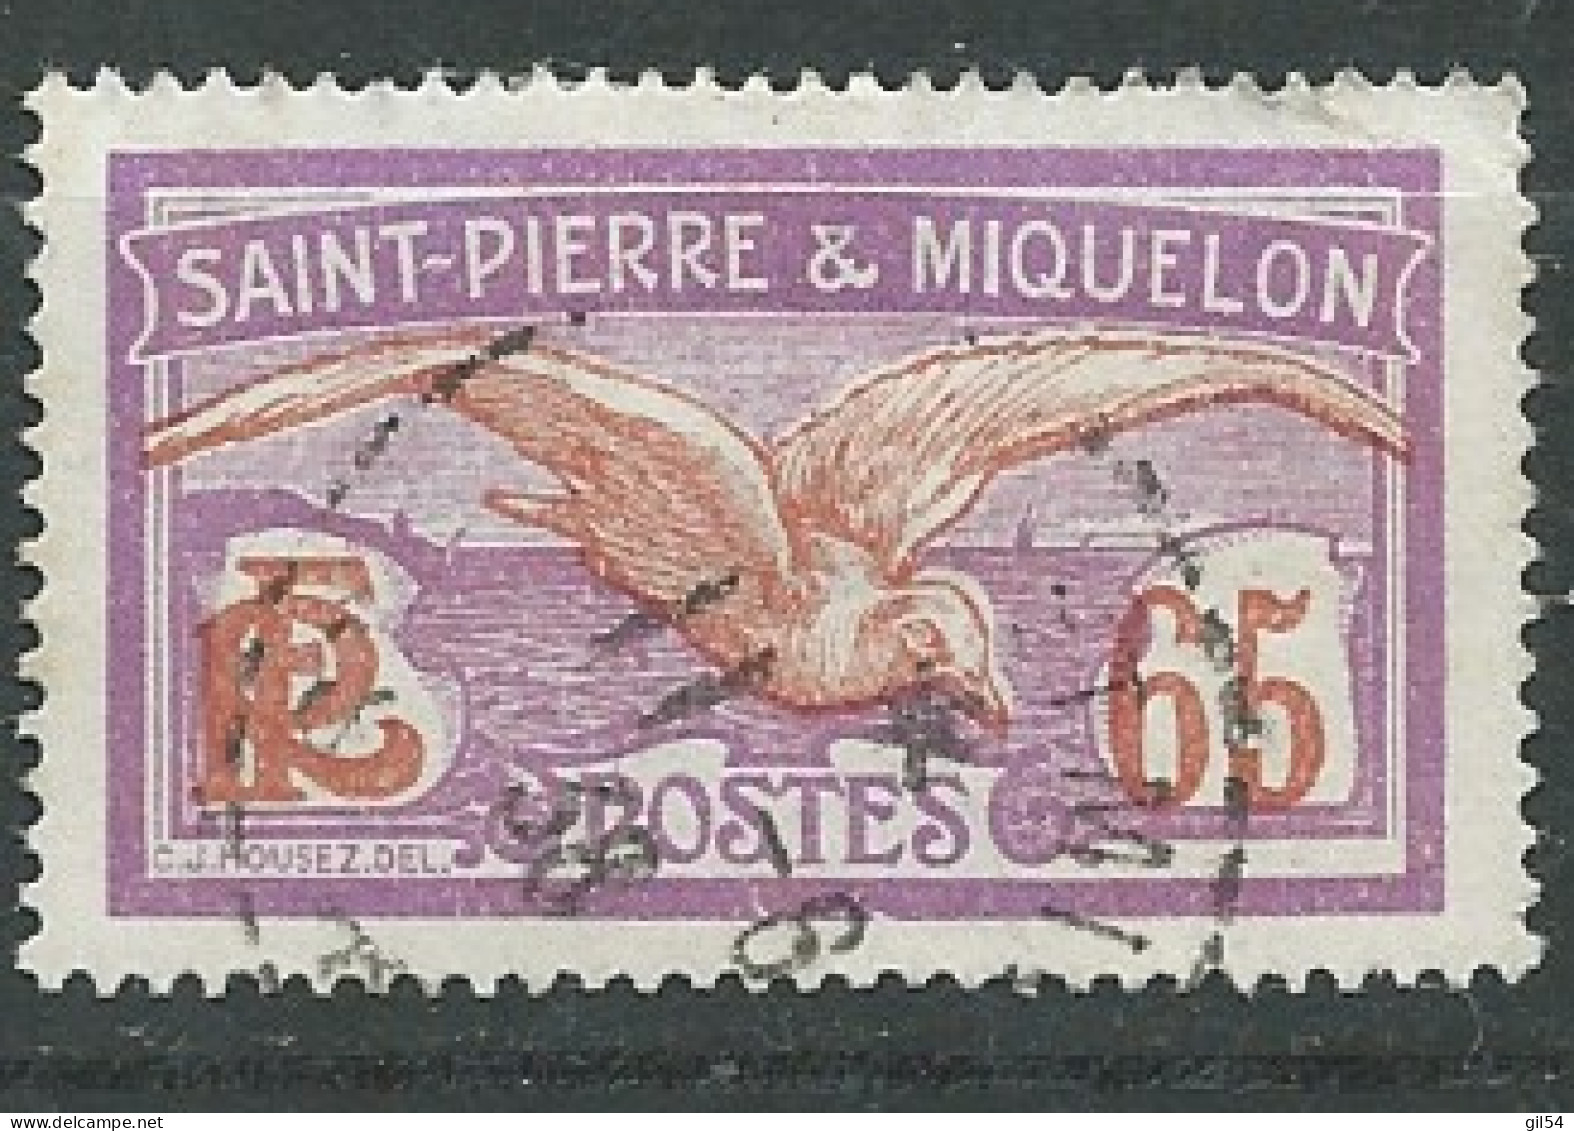 Saint Pierre Et Miquelon )  - Yvert N° 117 Oblitéré       -  Ax 15841 - Usati